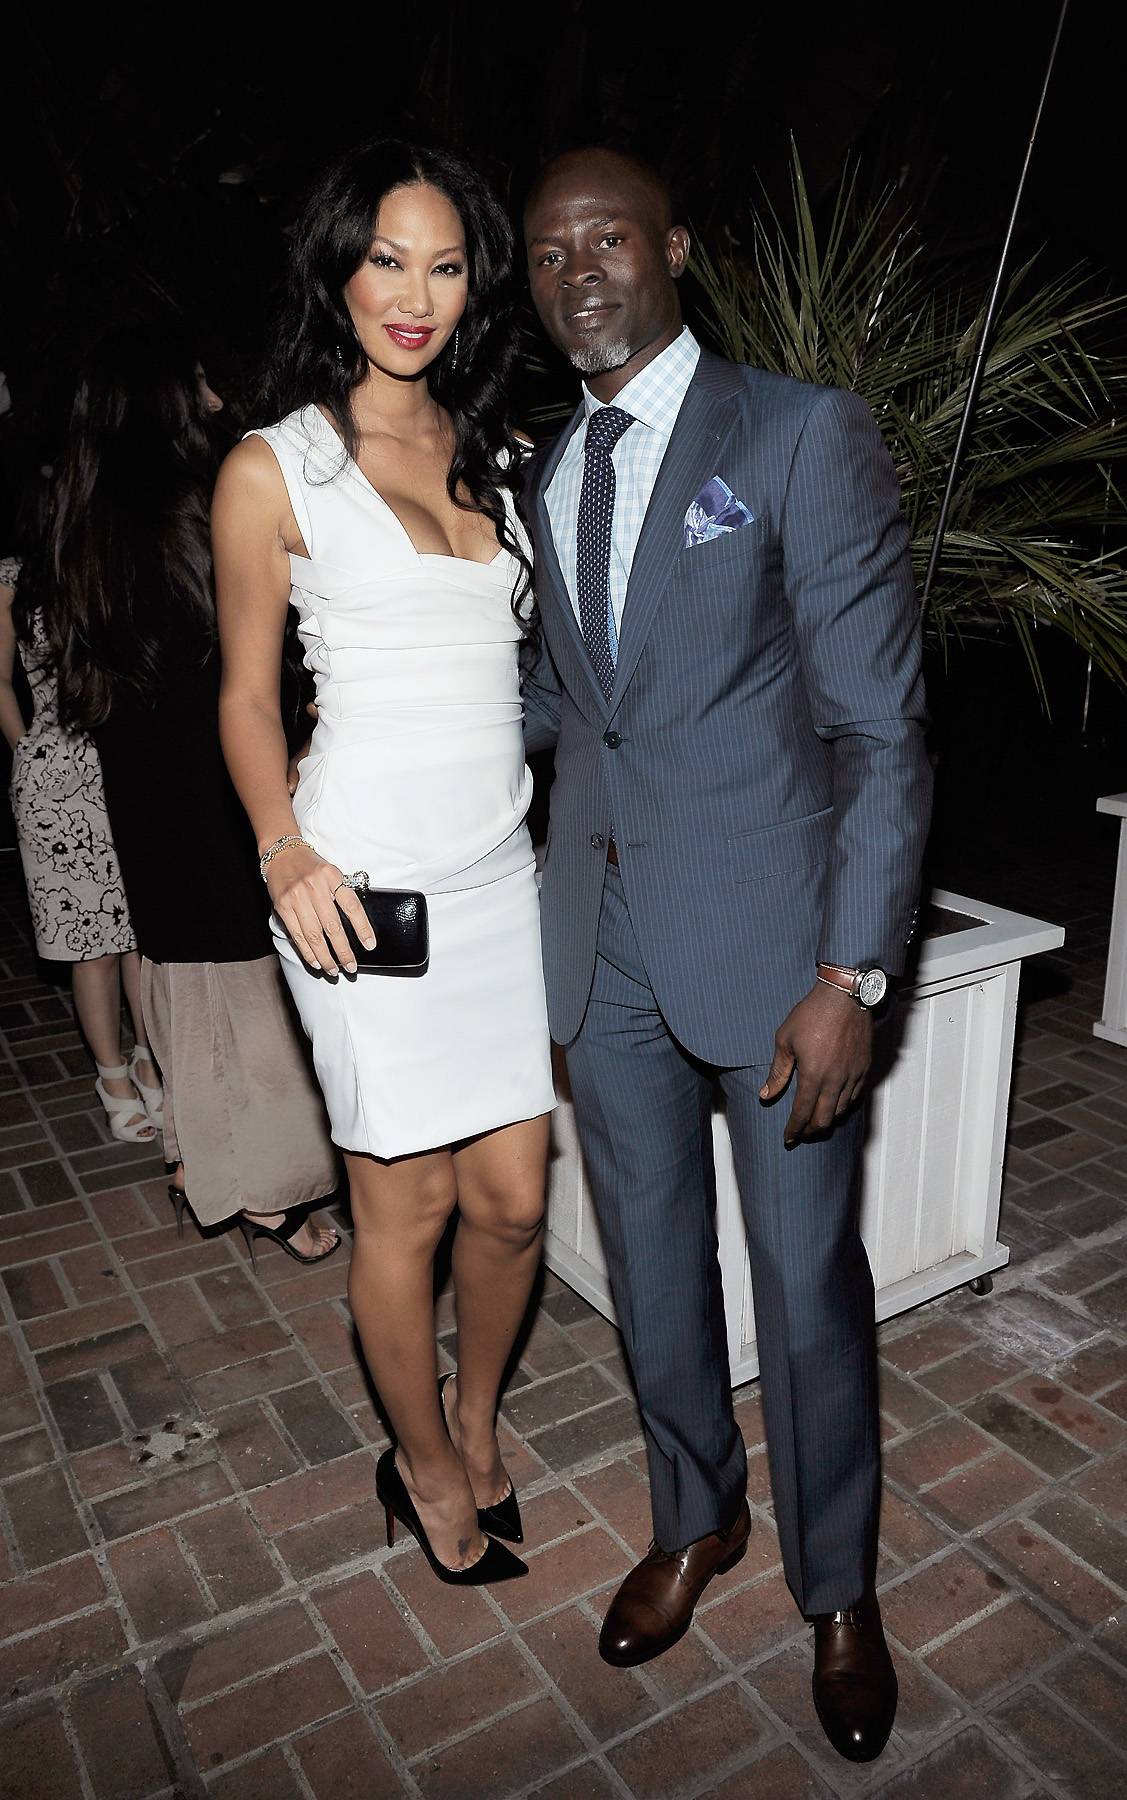 Report: Kimora Lee Simmons and Djimon Hounsou Split | News | BET